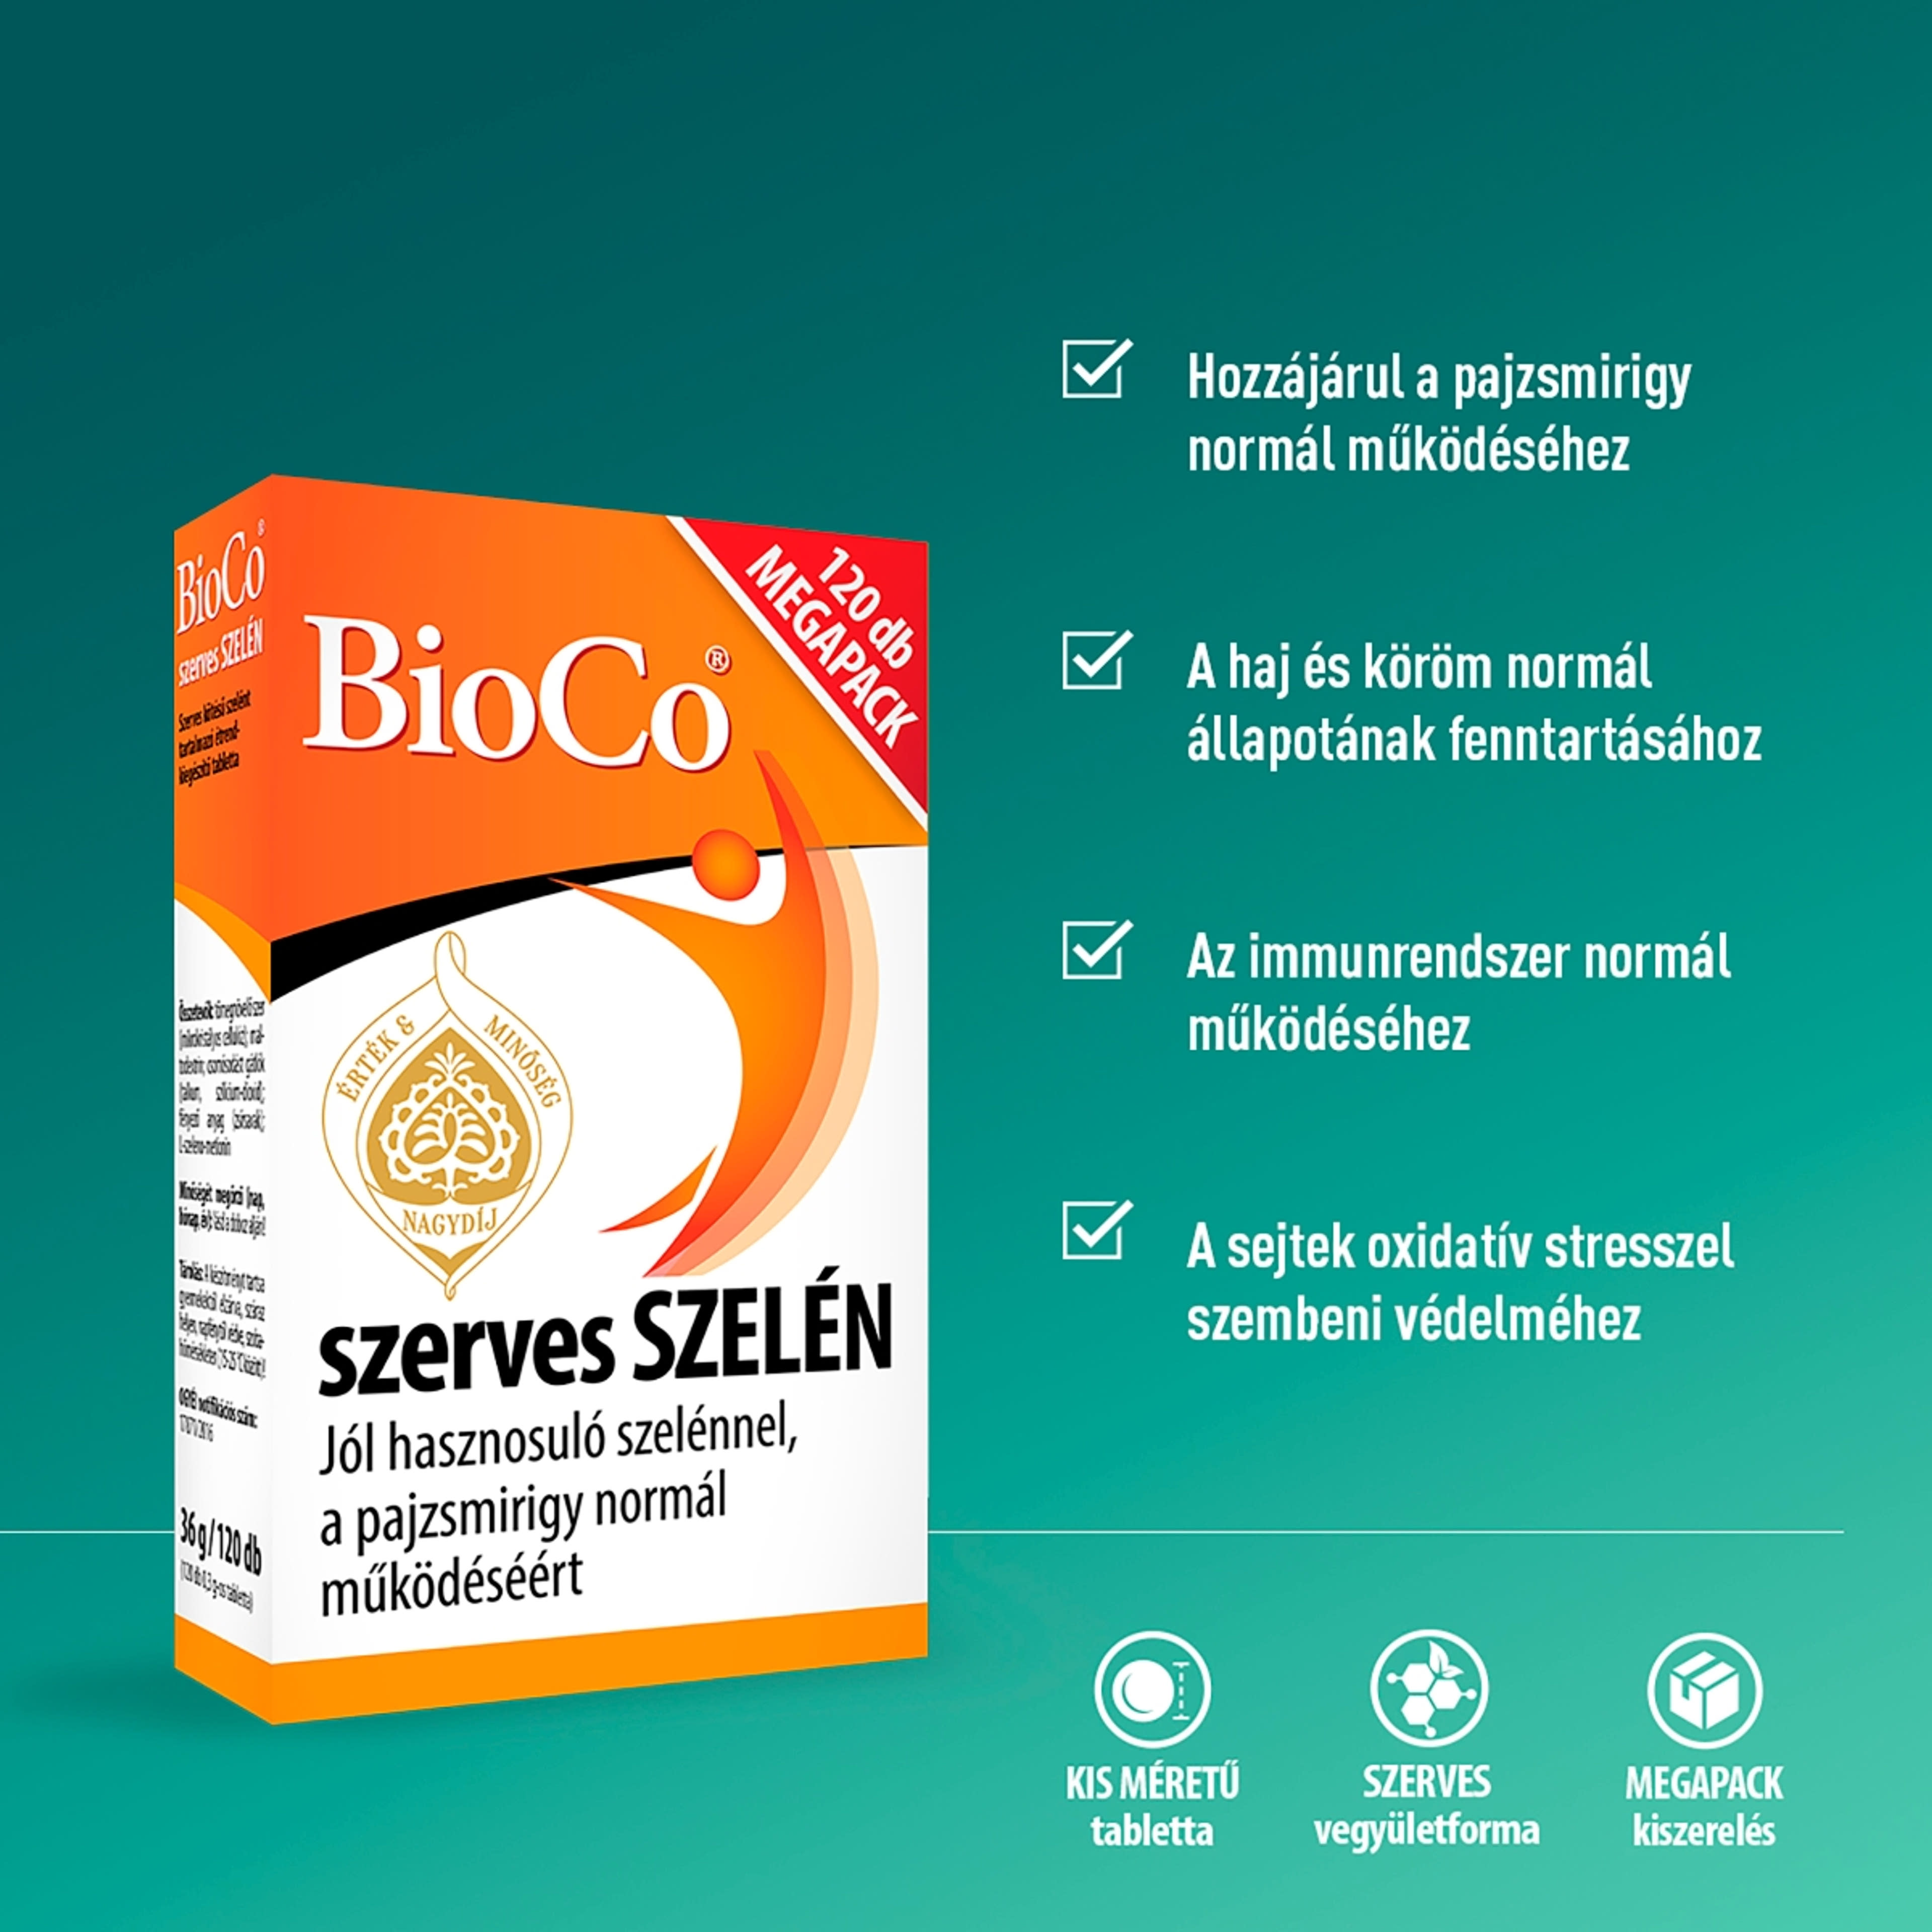 Bioco szerves szelén megapack tabletta - 120 db-3